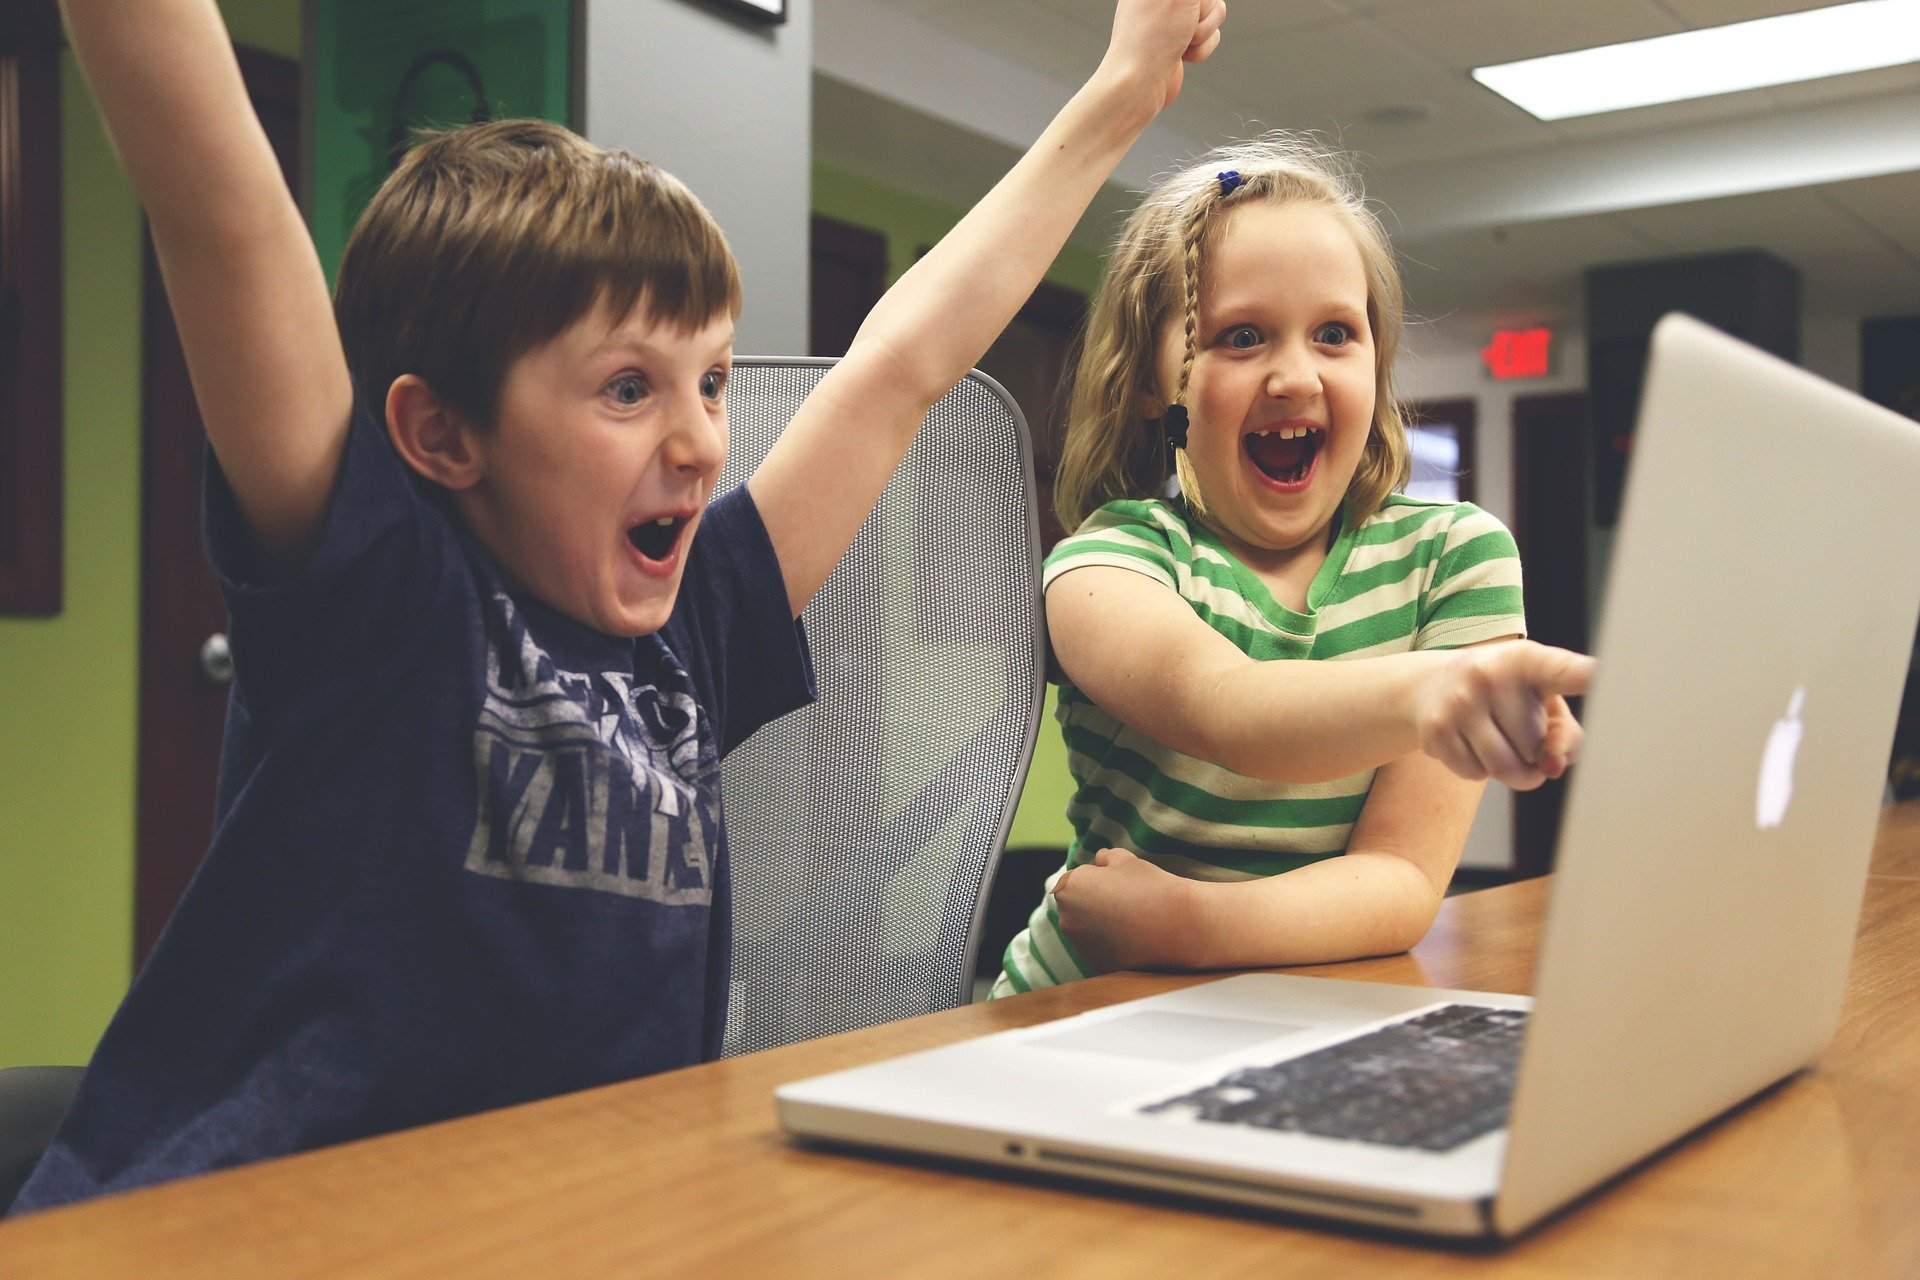 Dzieci siedzą przed komputerem i cieszą się z wygranej